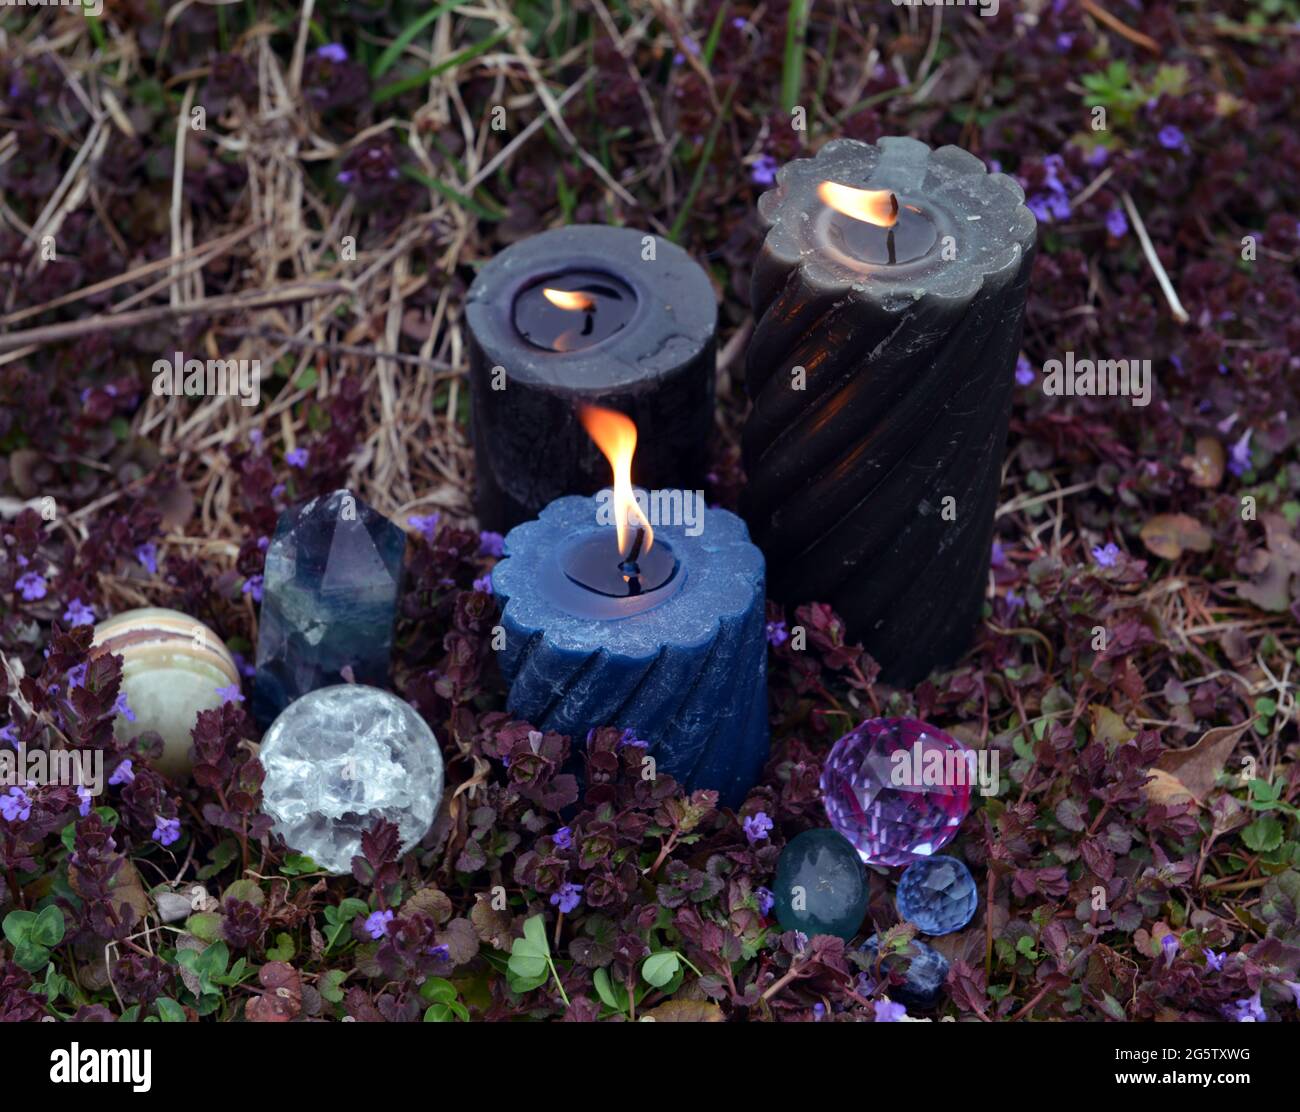 Rituel magique Beltane avec bougies allumées, cristaux et objets magiques à l'extérieur. Arrière-plan ésotérique, gothique et occulte, Halloween mystique et wicca conc Banque D'Images